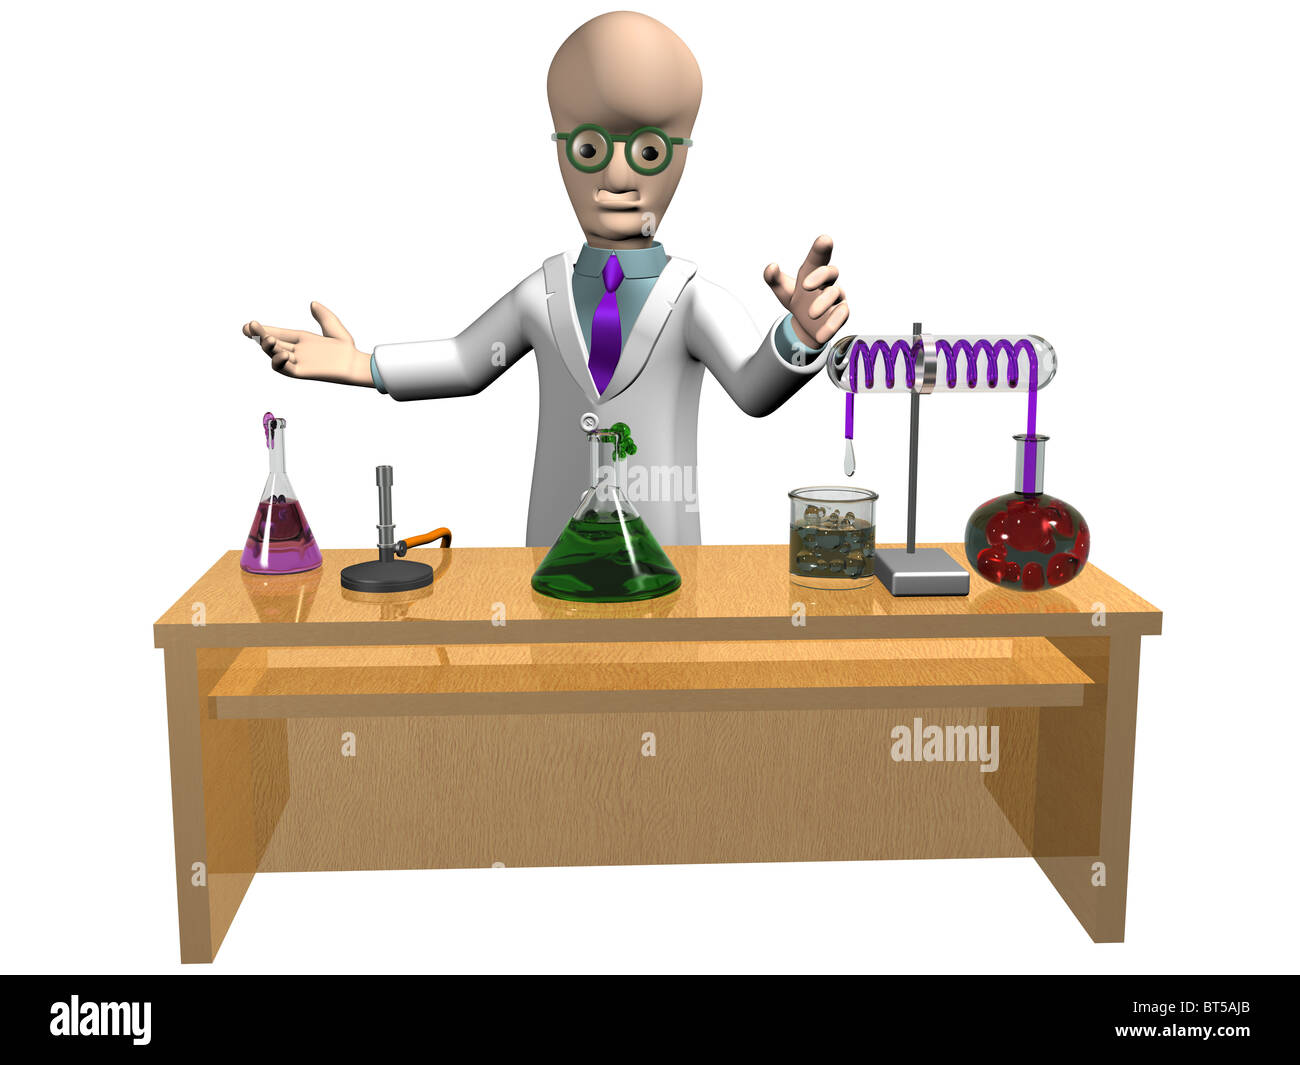 Isolierte Abbildung eines Cartoon-Wissenschaftlers sein Experiment demonstriert Stockfoto